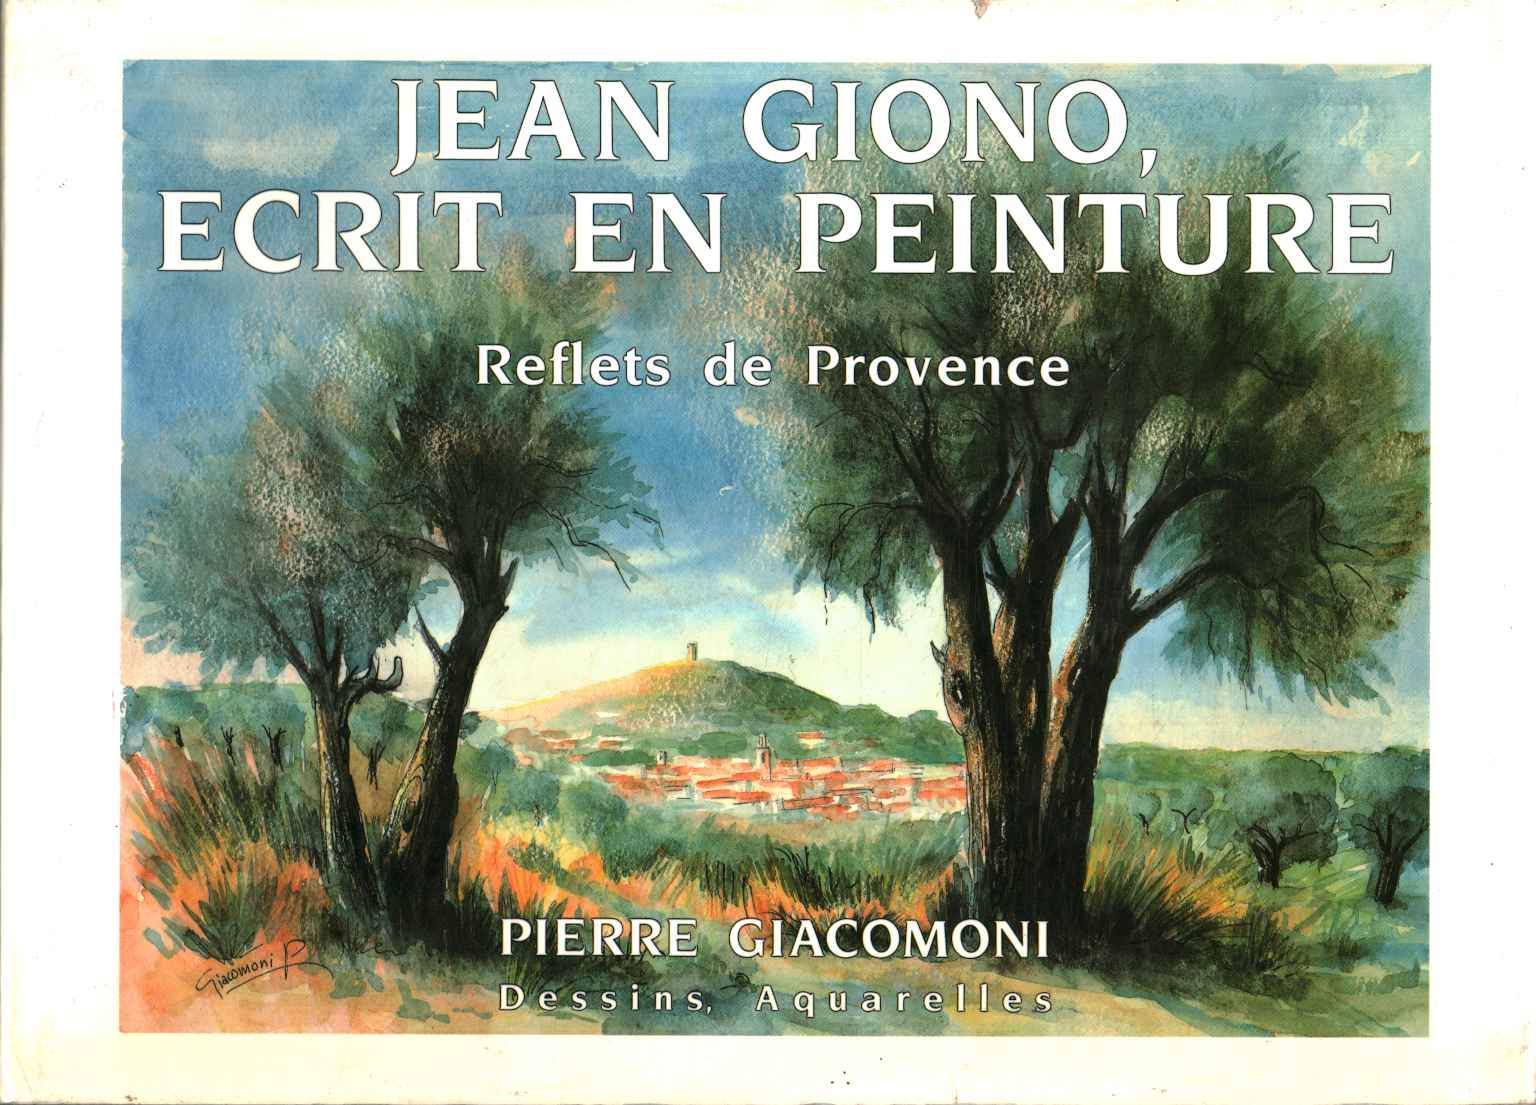 Jean Giono escribió en pintura,Jean Giono escribió en pintura,Jean Giono escribió en pintura,Jean Giono escribió en pintura,Jean Giono escribió en pintura